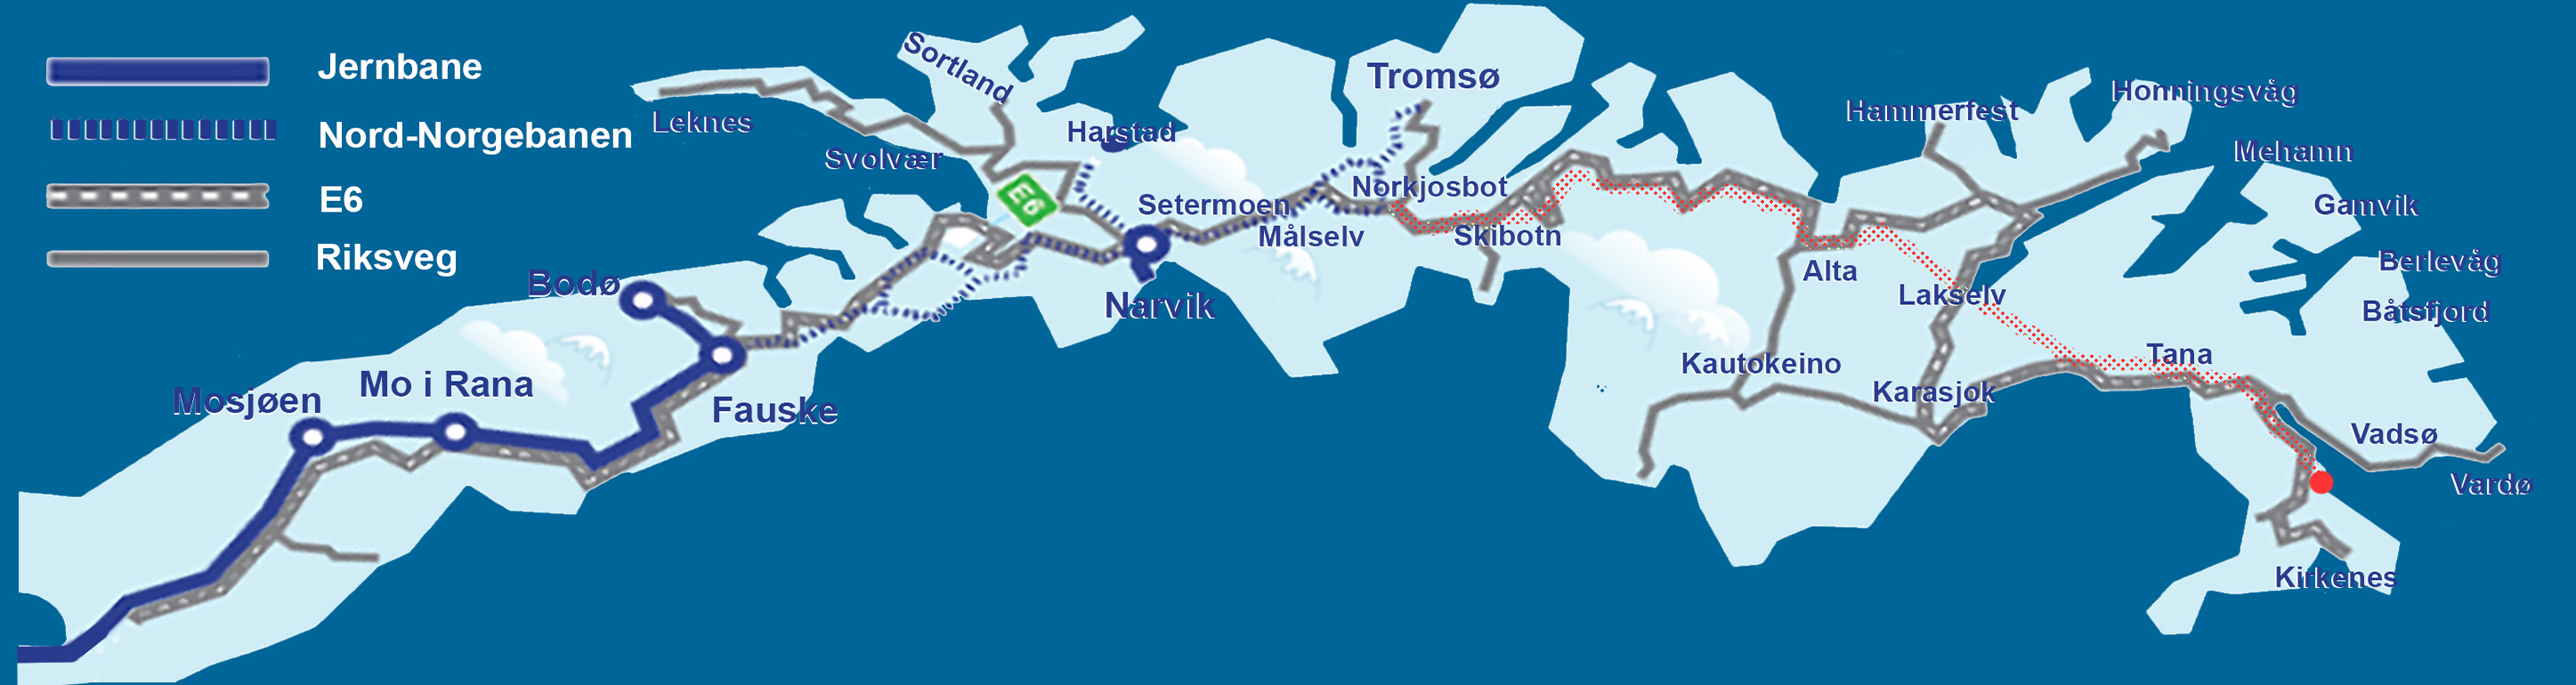 Kart over nordnorgebanen